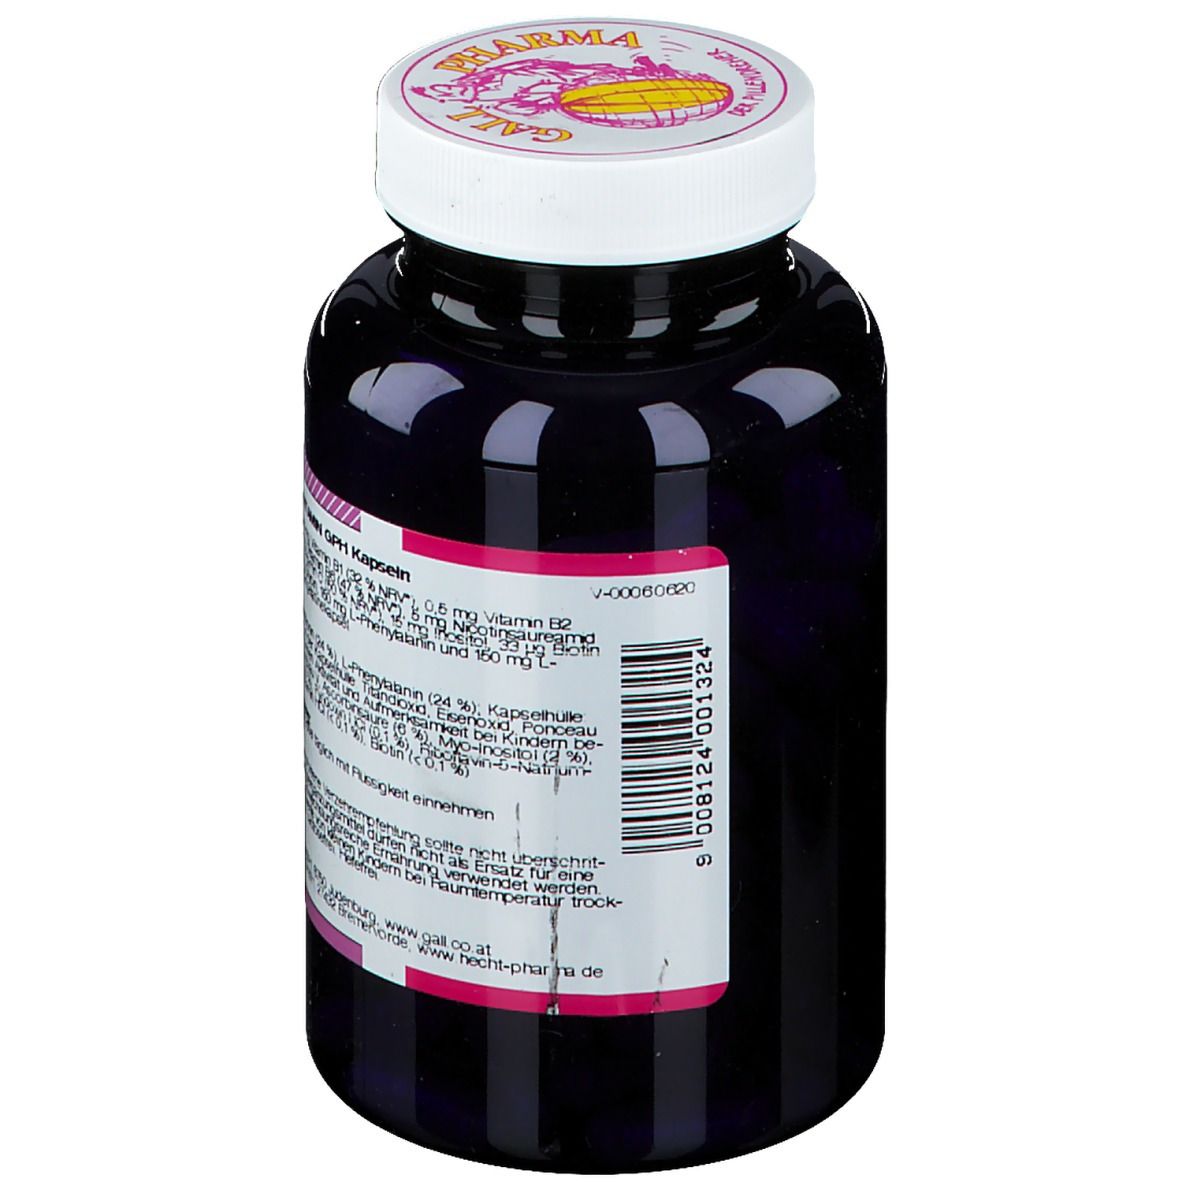 GALL PHARMA Aminosäure-Vitamin GPH Kapseln